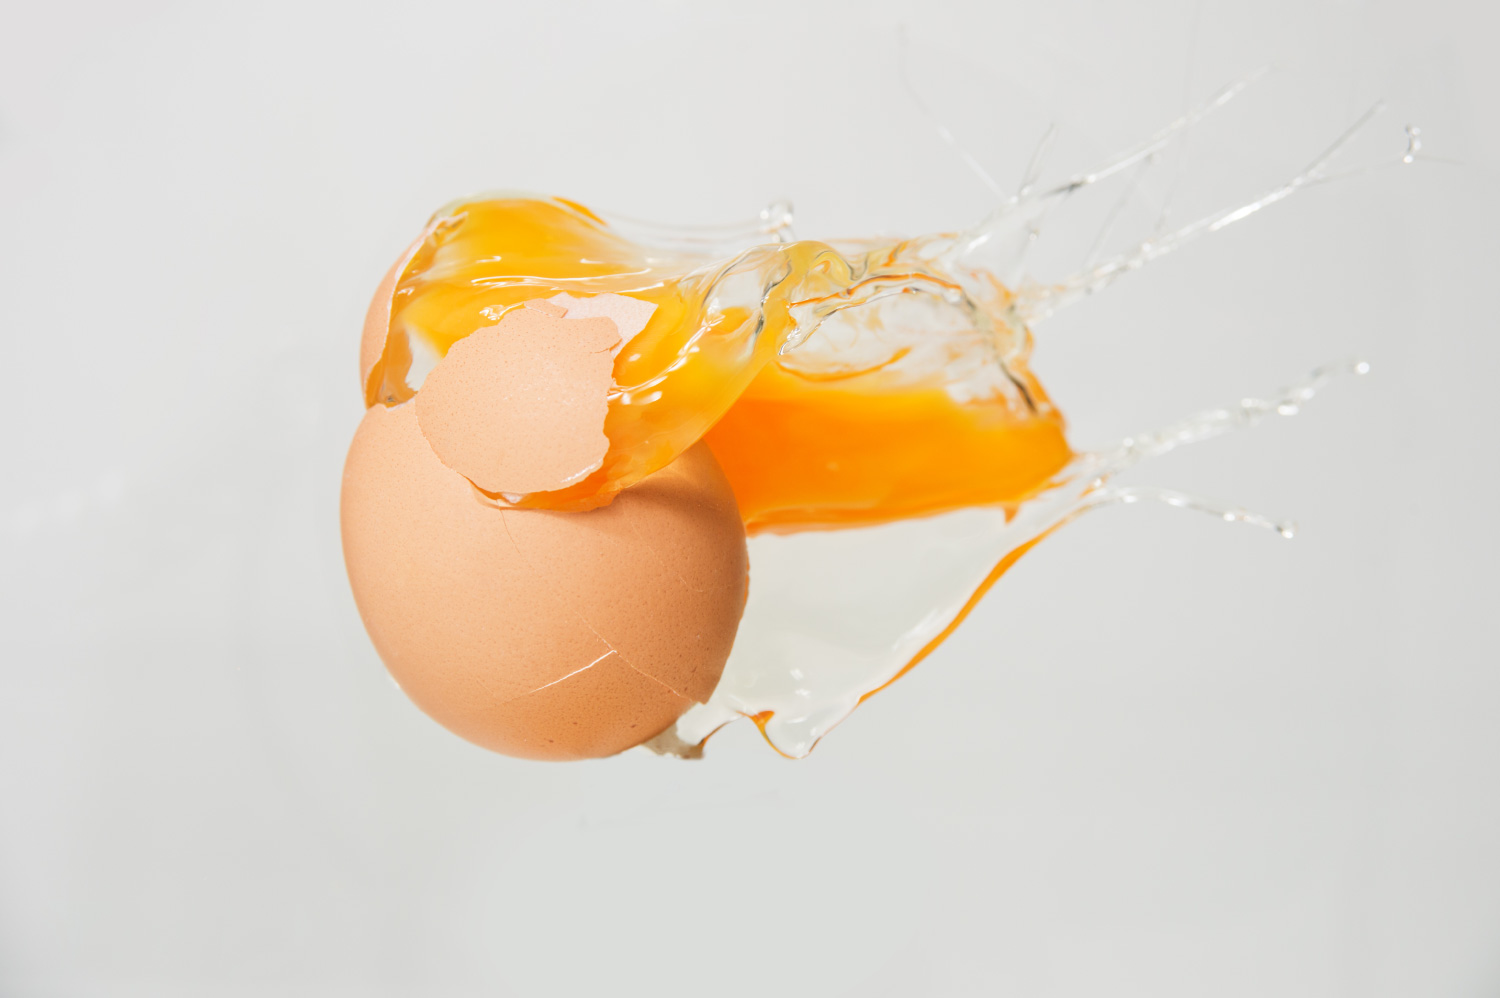 egg splattering showing yoke and egg white protein